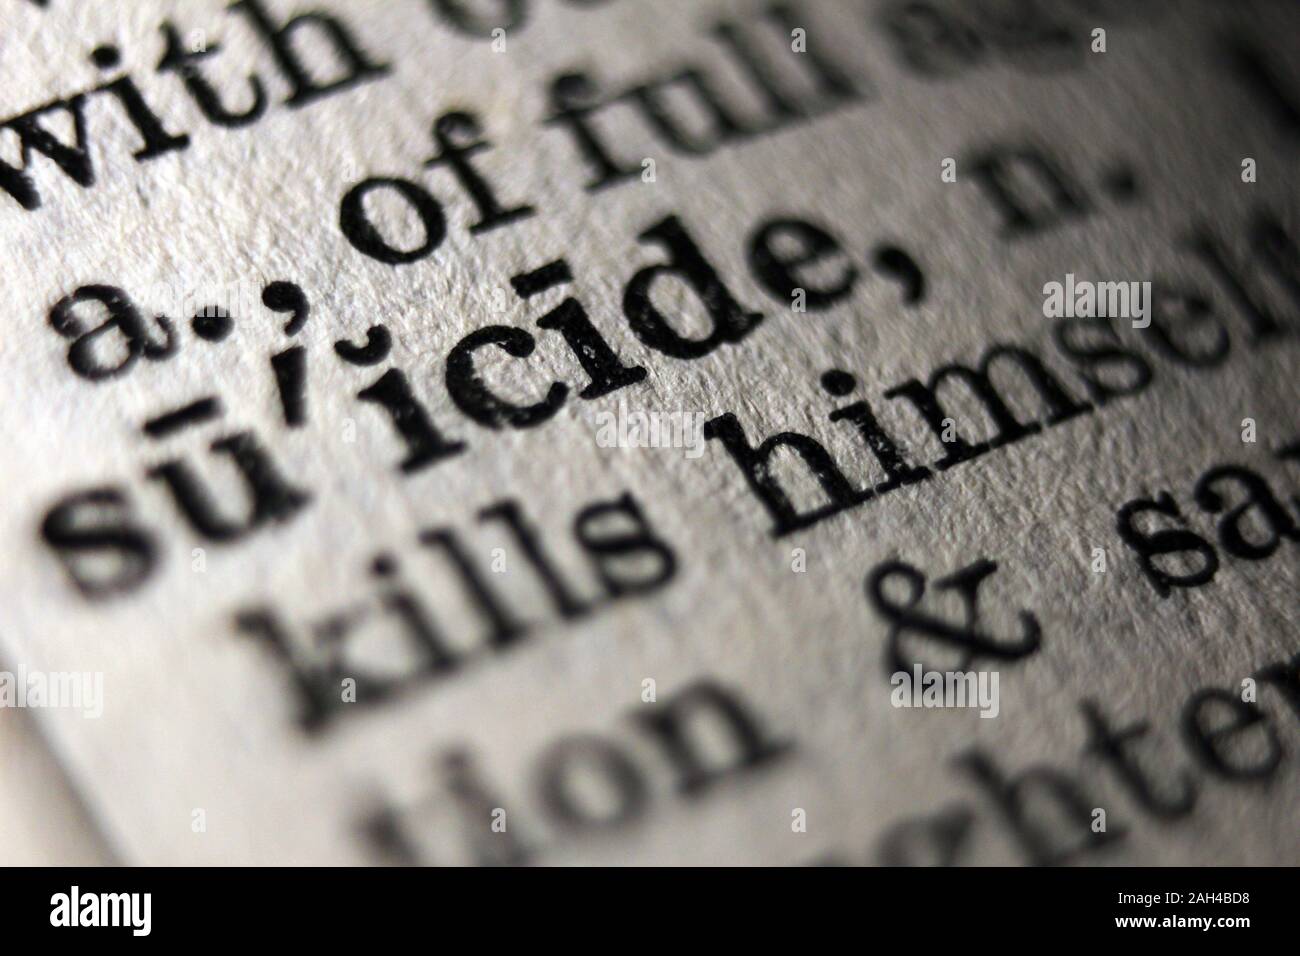 La parola "suicide" stampata sulla pagina di libro, close-up Foto Stock